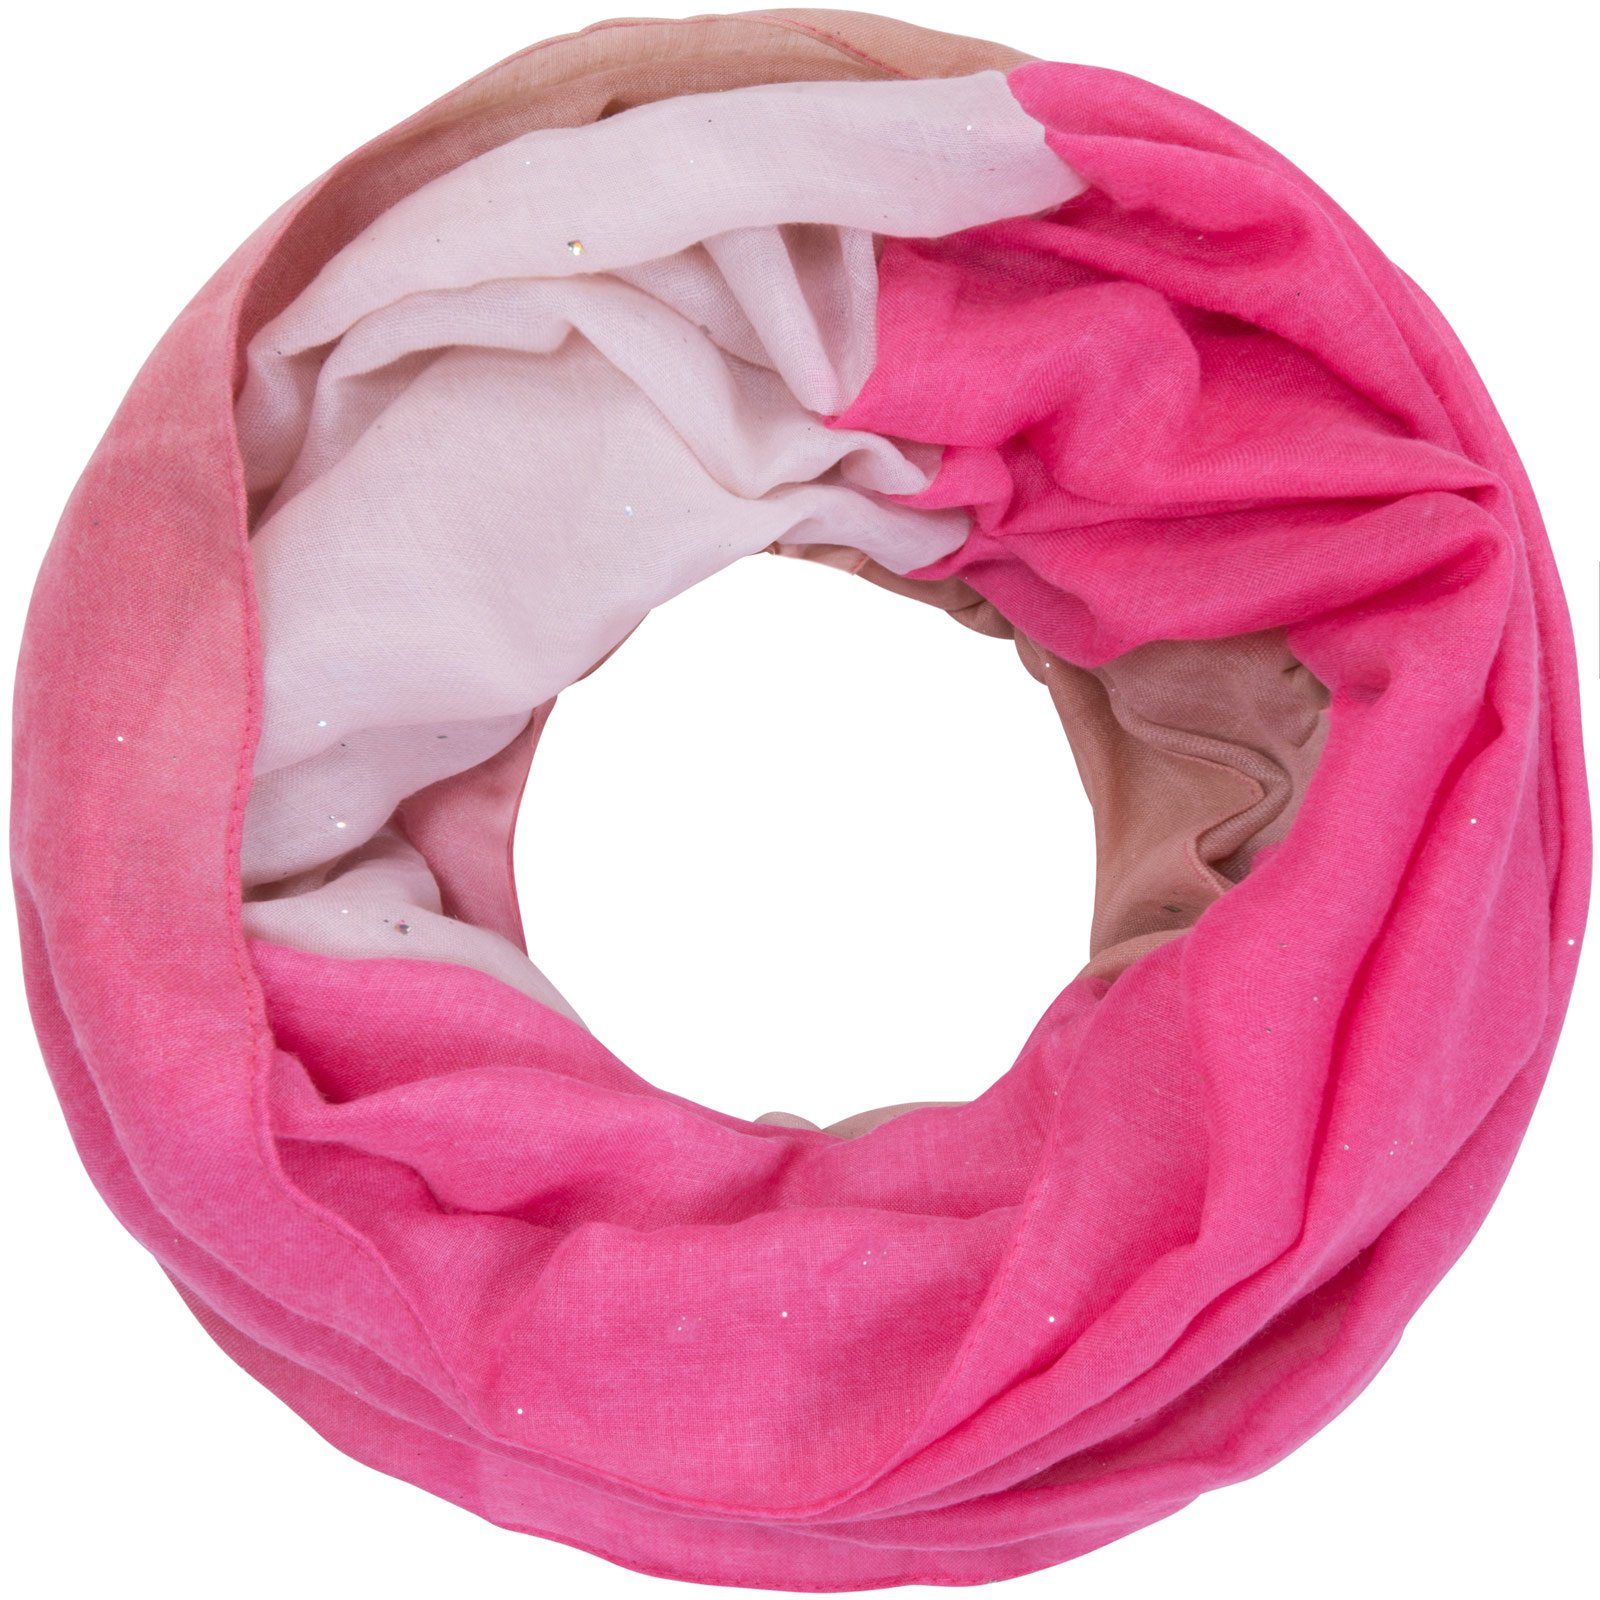 Faera Loop, Damen Schal mit Farbverlauf mit dezentem Glitzer weich und leicht Loopschal Rundschal pink